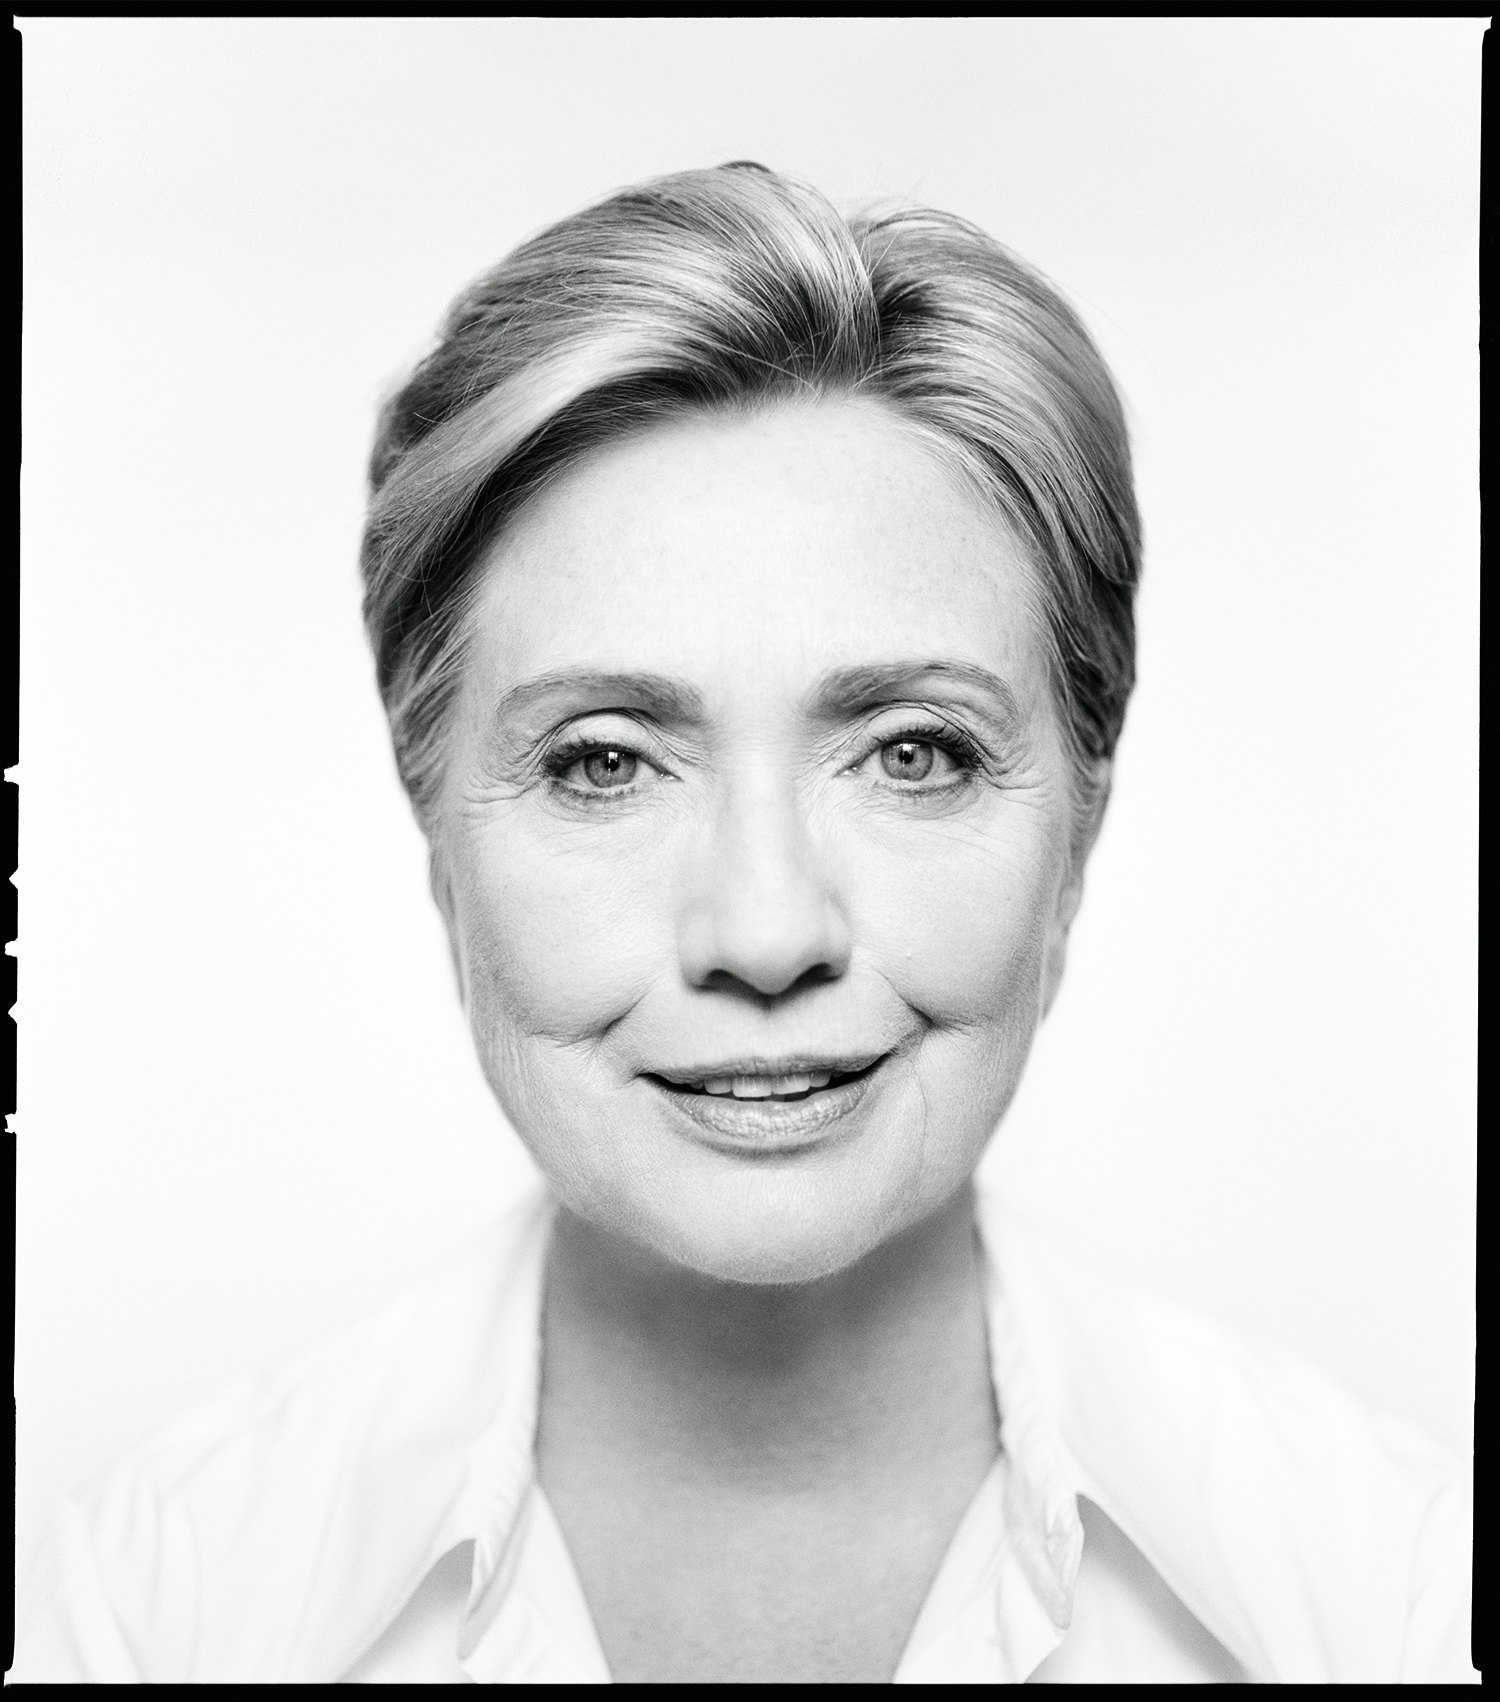 Secretary Hillary Clinton, Washington, D.C.